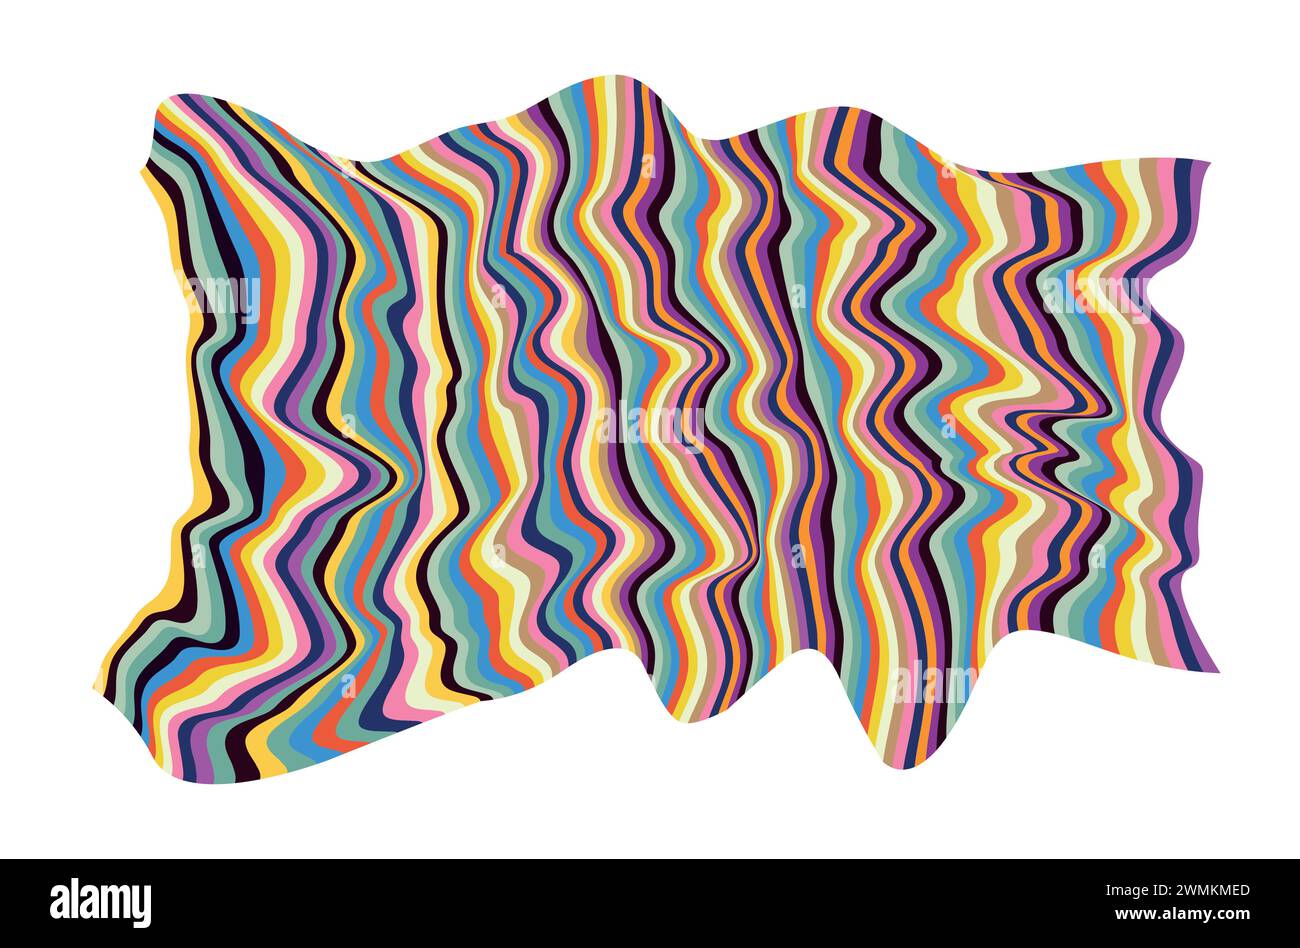 Illustrazione vettoriale della liquefazione ondulata colorata moderna di linee fluide astratte nello stile del modello di copertina della carta da parati. Illustrazione Vettoriale